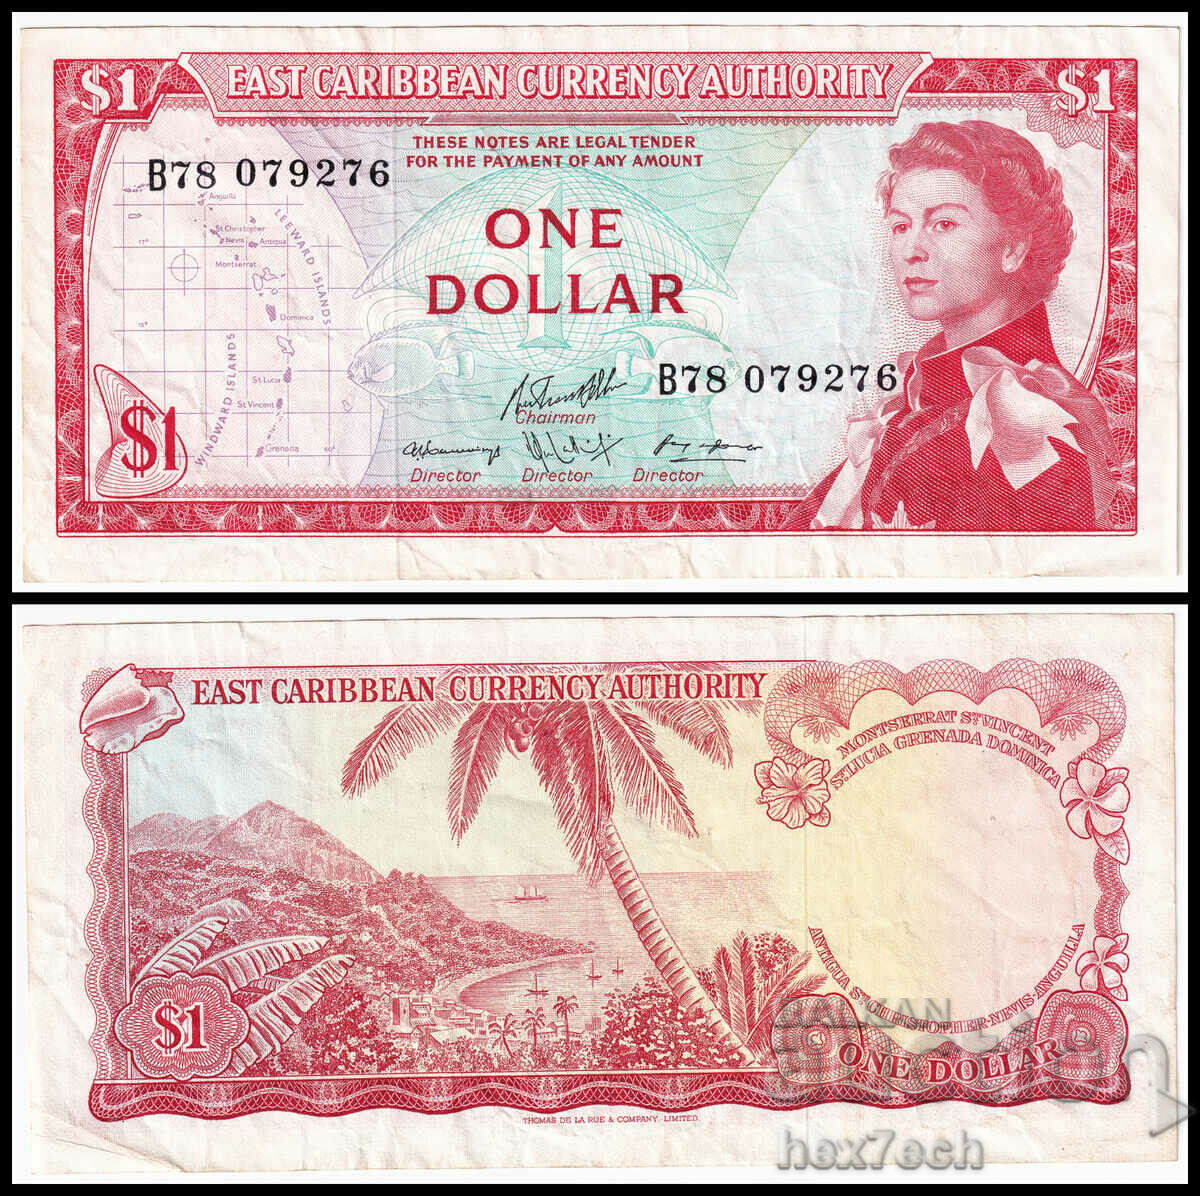 ❤️ ⭐ Caraibe de Est 1965 1 USD ⭐ ❤️